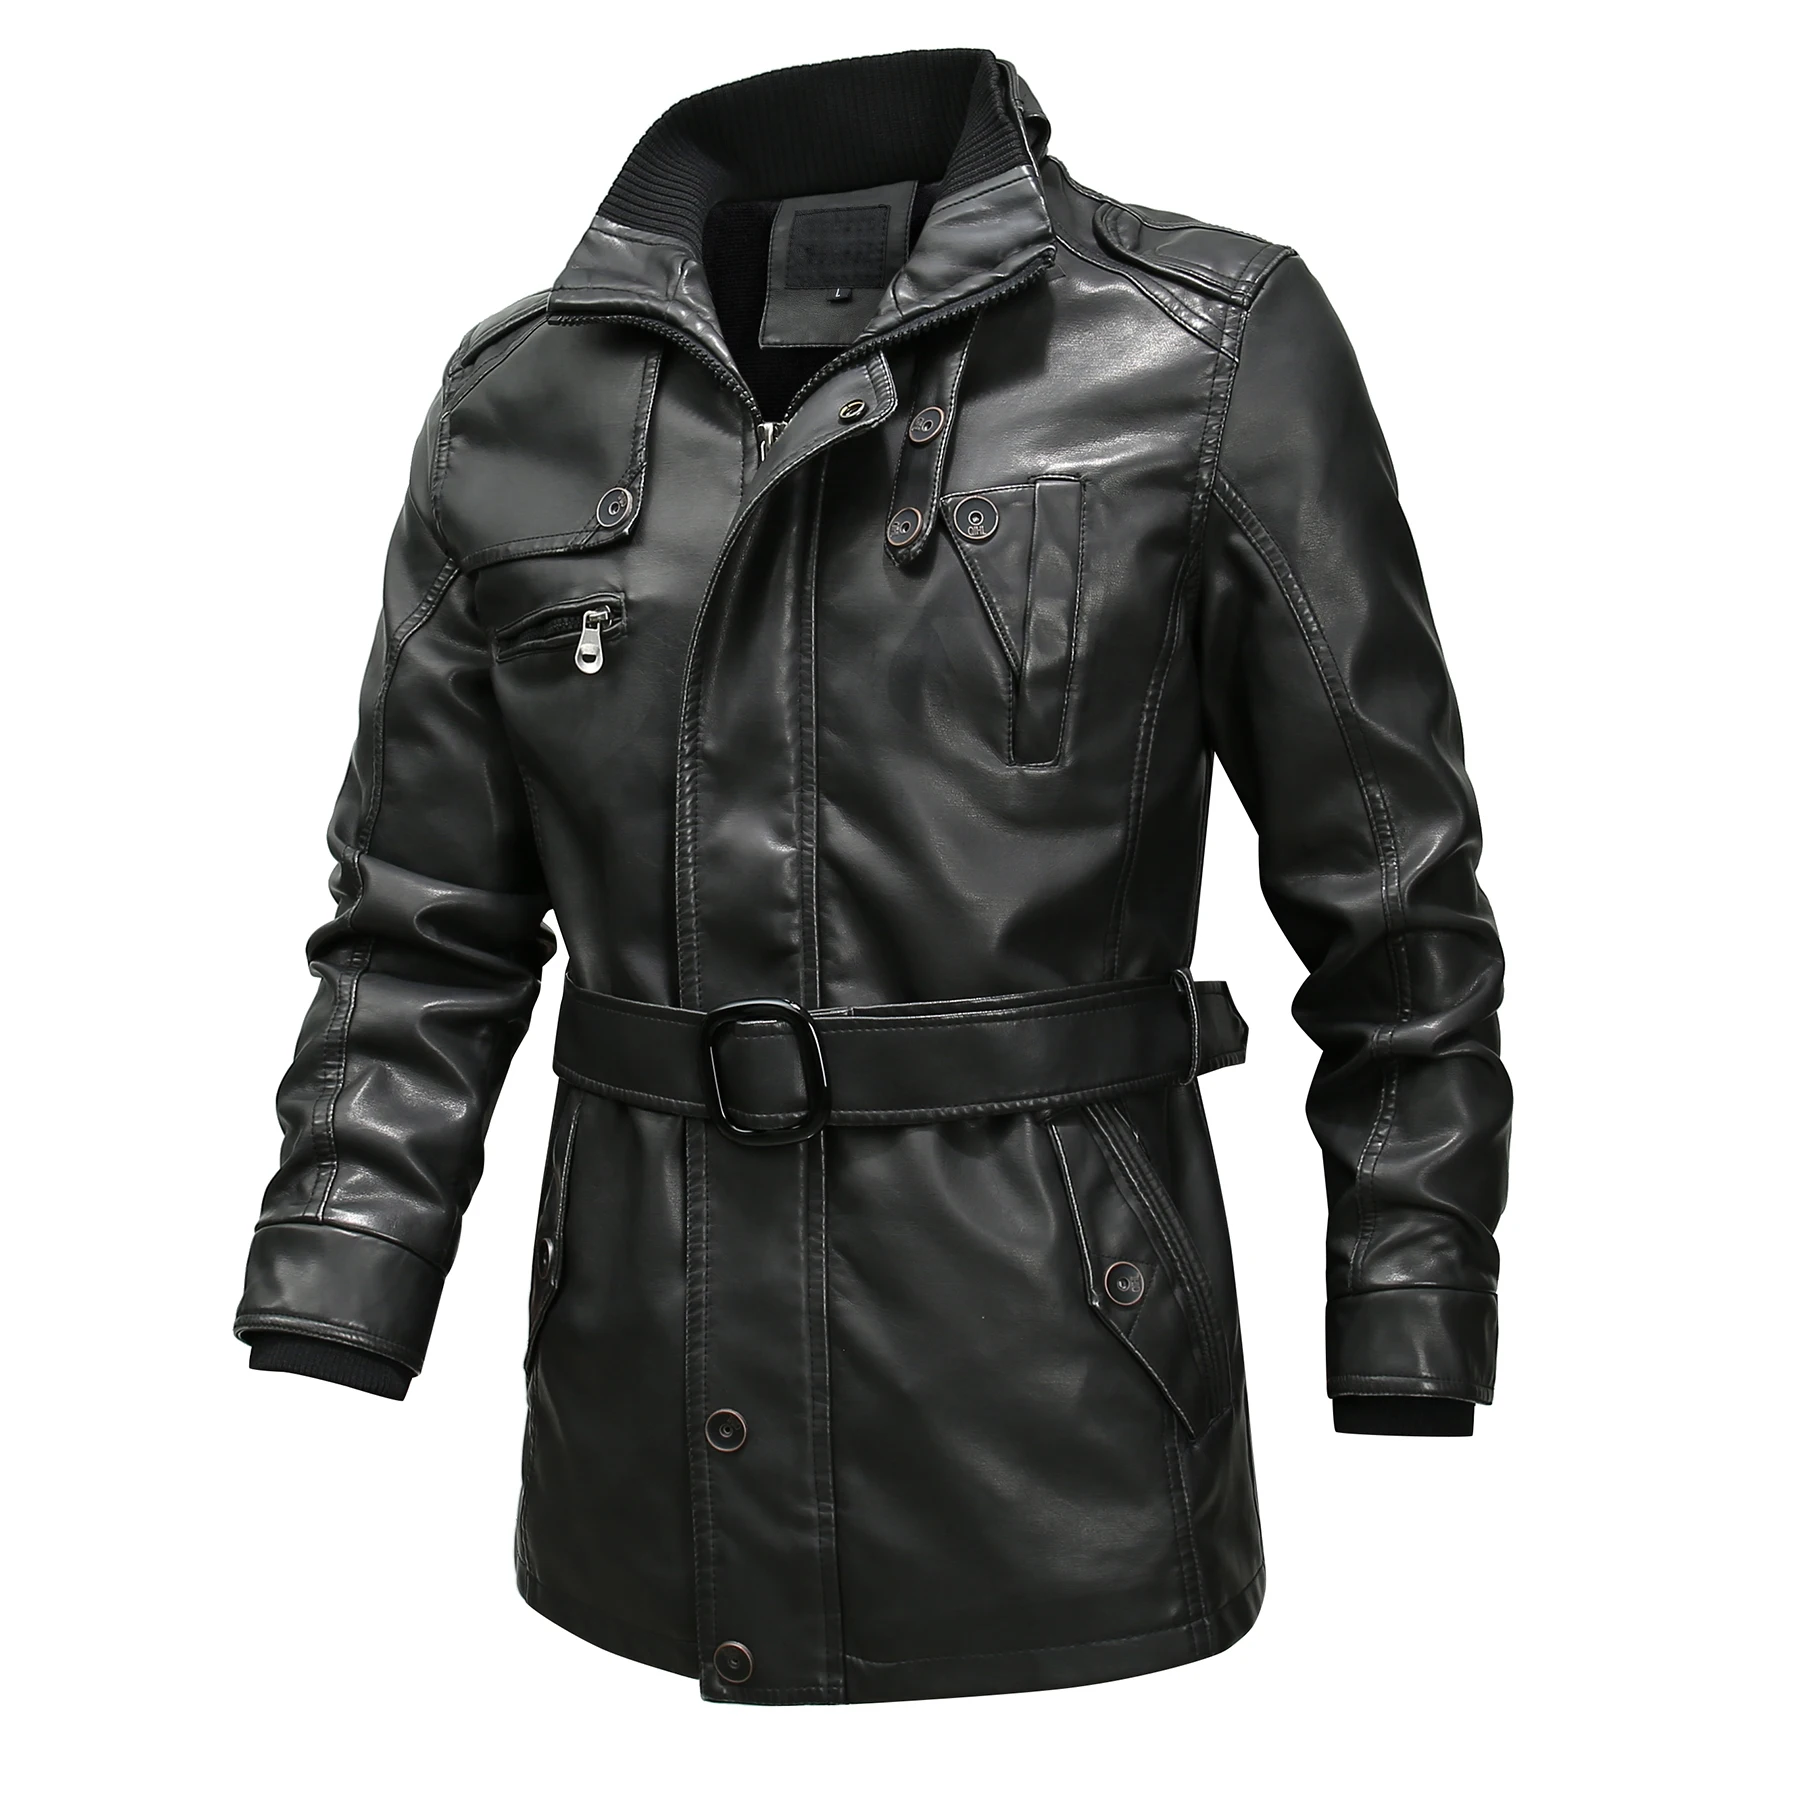 CYSINCOS эластичная мотоциклетная кожаная куртка на молнии для мужчин с воротником-стойкой, облегающие байкерские кожаные куртки, пальто для мужчин